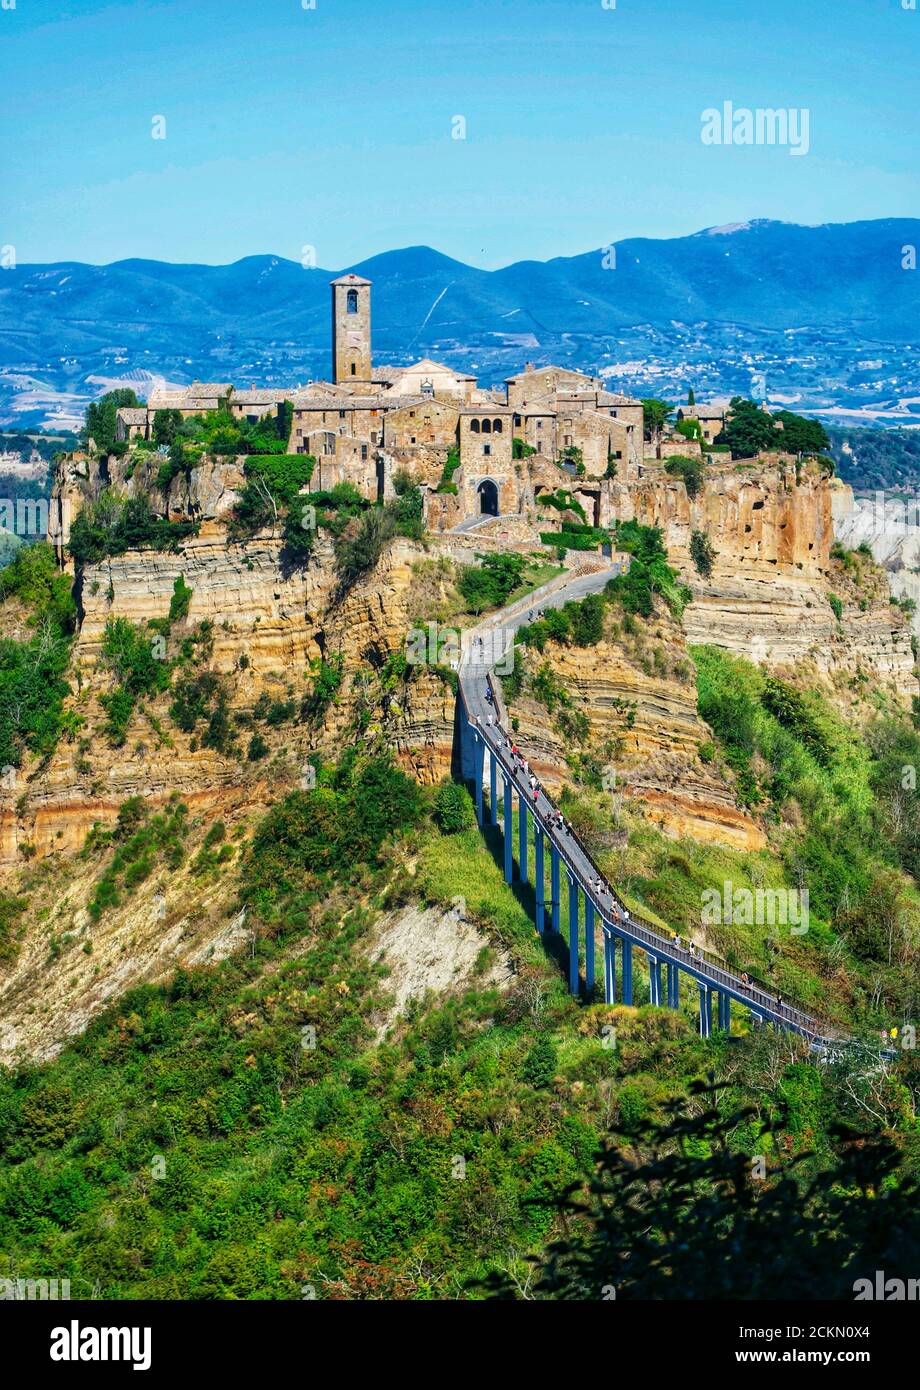 Vista panorámica de la ciudad etrusca de Civita di Bagnoregio, lazio, italia Foto de stock